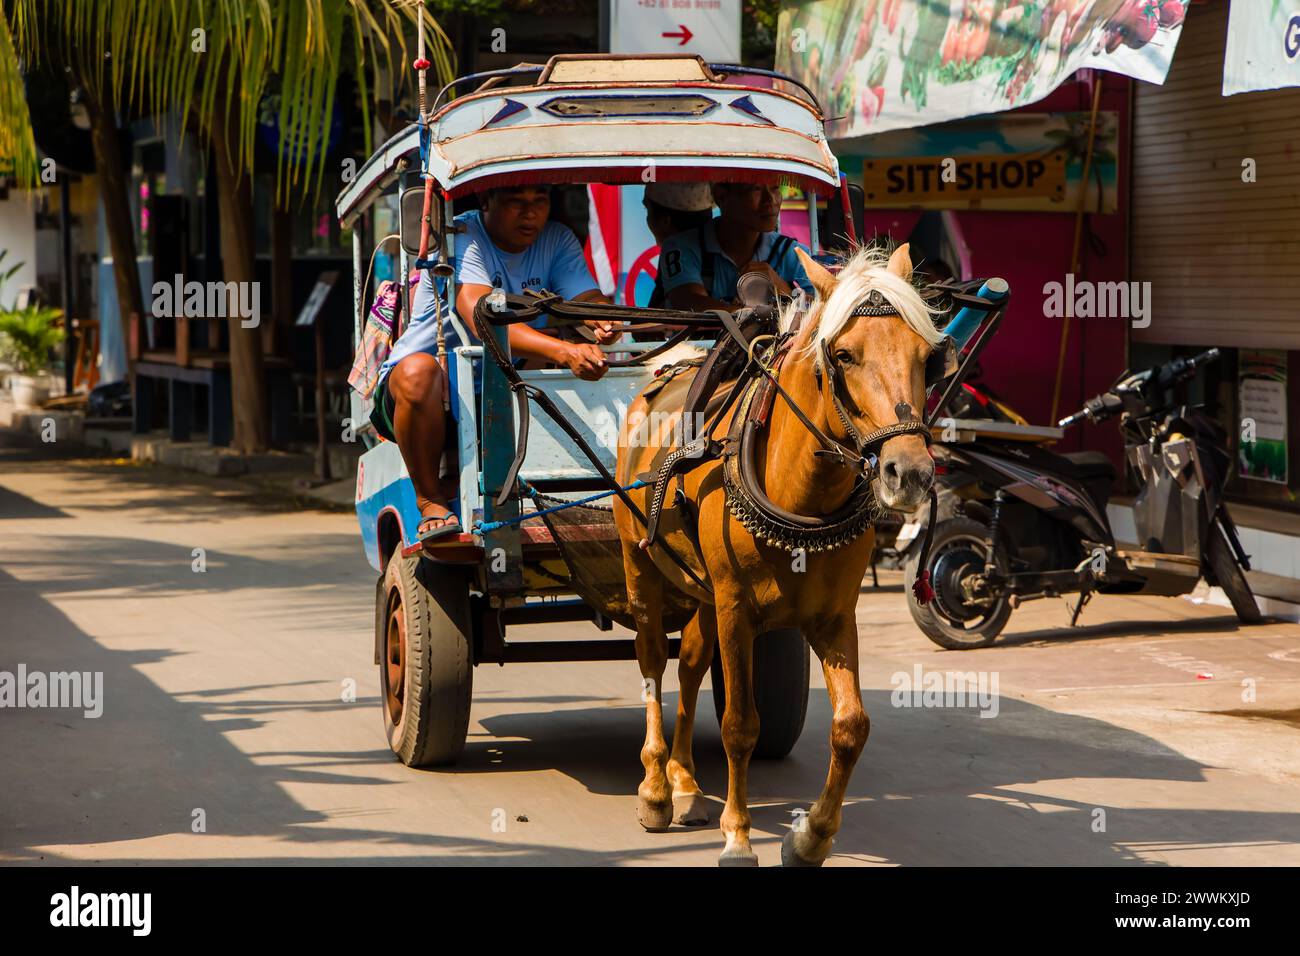 Une charrette à chevaux traditionnelle (Cidomo) transportant des touristes sur l'île de Gili Air.L'utilisation de Cidomos a fait l'objet de critiques sur le traitement des chevaux Banque D'Images